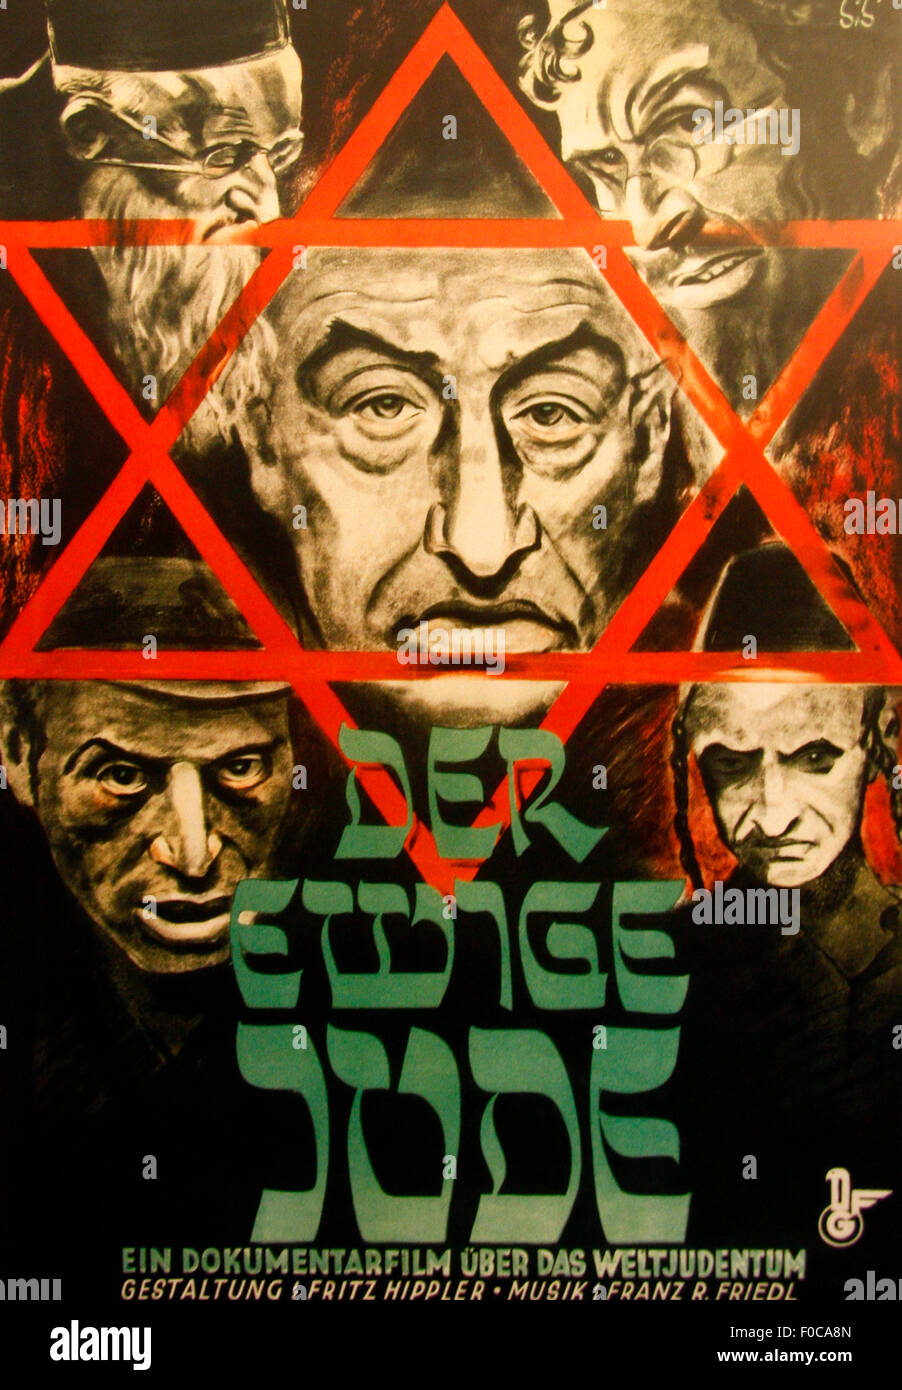 Oktober 2010 - OBERSALZBERG: Propagandaplakat für den NS-Antisemtitic Film "Der Ewige Jude" (der ewige Jude), Ausstellung in der Stockfoto